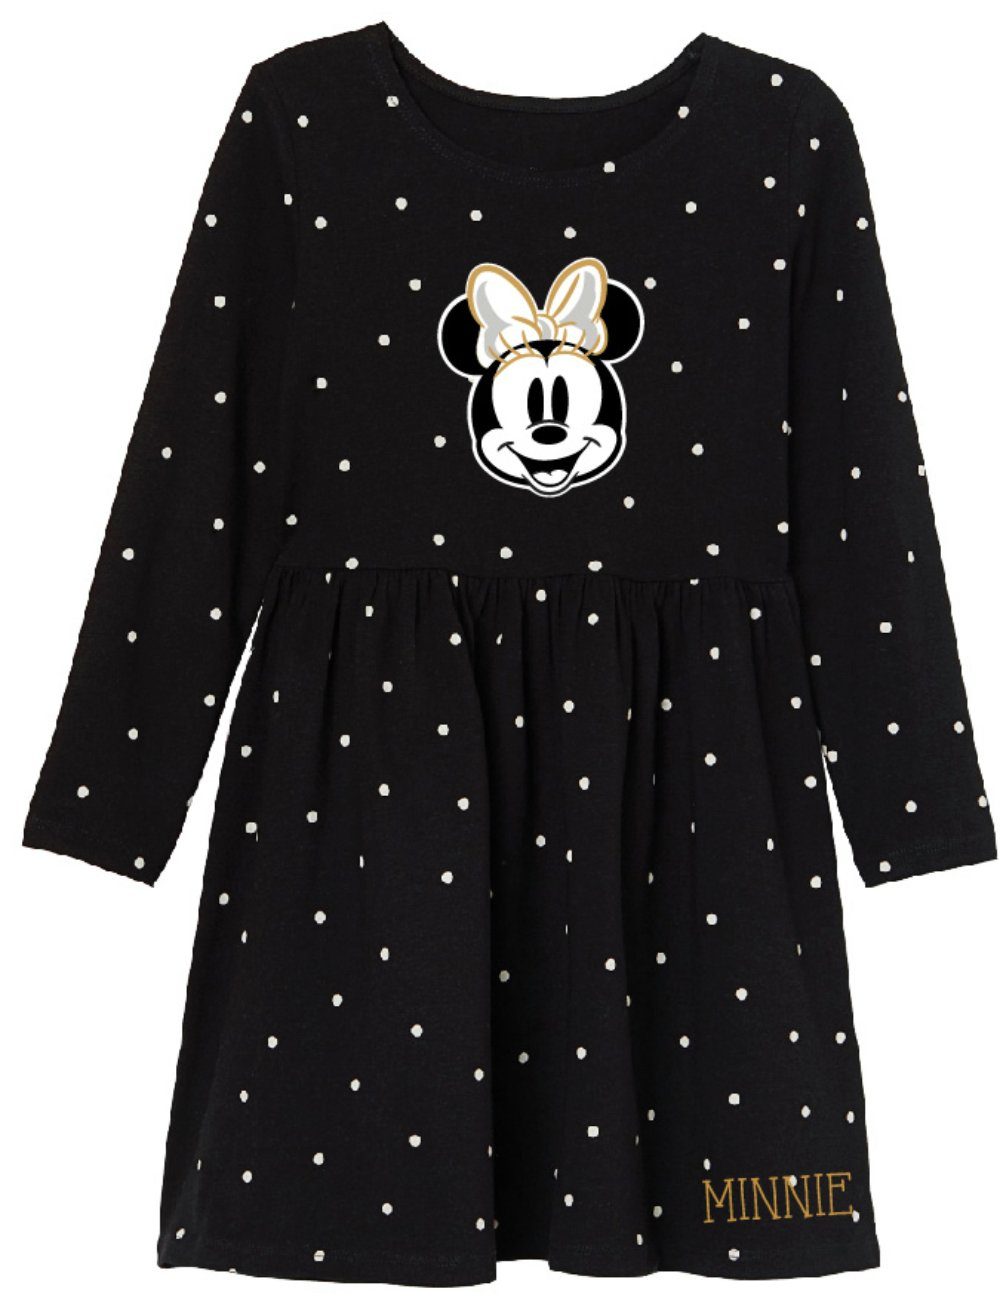 Kinder Kids (Gr. 92 -146) Disney Minnie Mouse Sommerkleid Minnie Mädchen Kleid - Schwarz Golden Gr. 104 bis 134, 100% Baumwolle